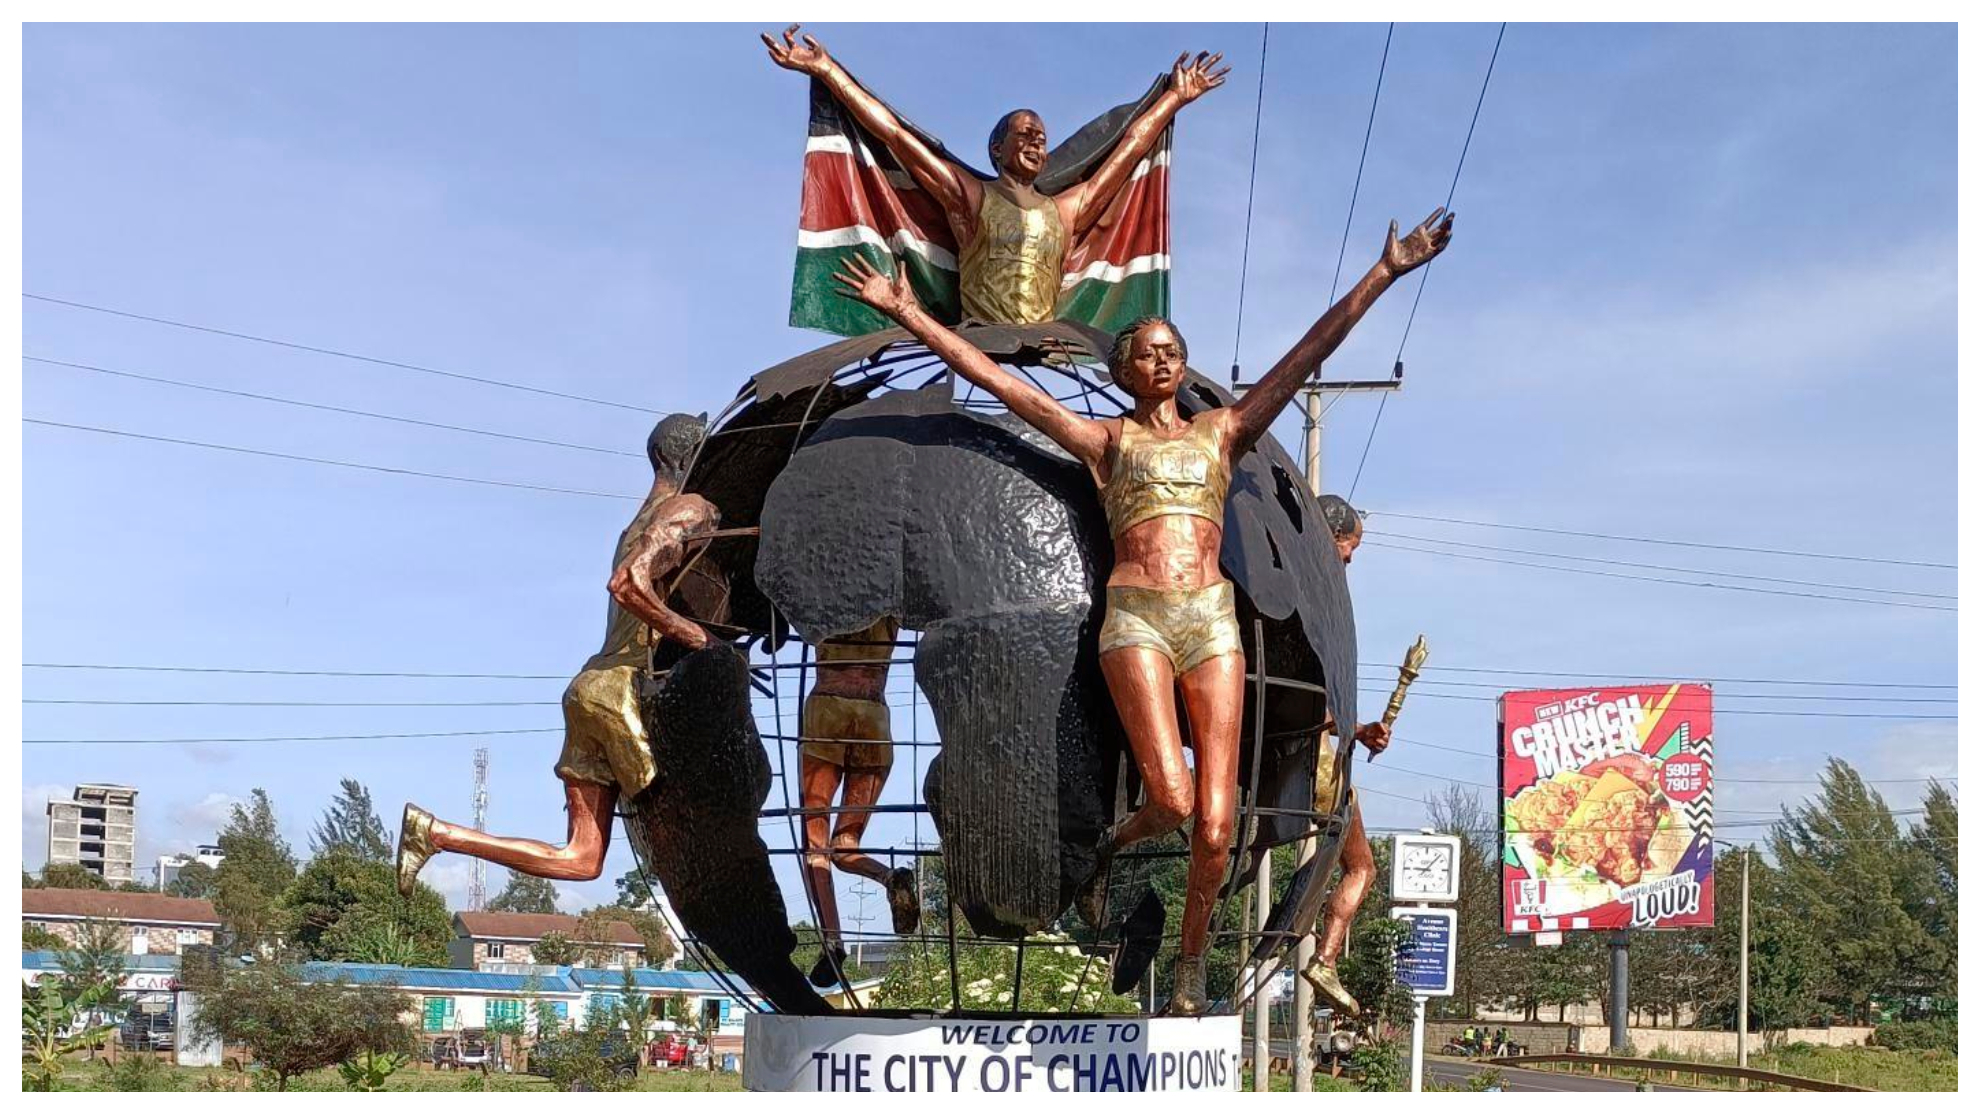 Escultura en Eldoret en homenaje a sus atletas.